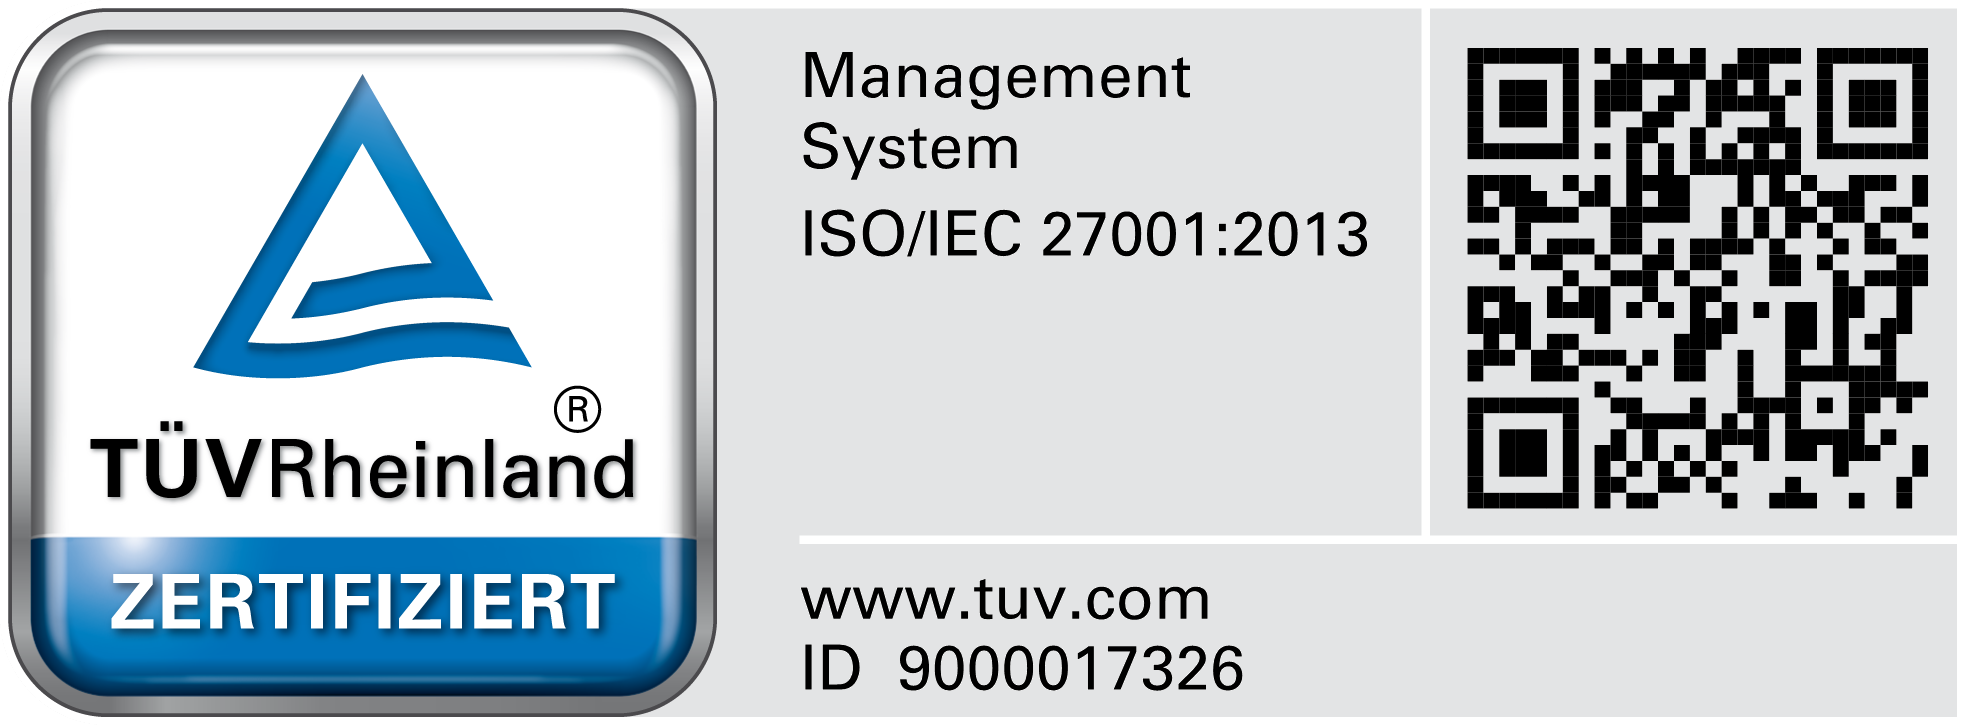 rhöncloud ist ISO/IEC 27001 zertifizierter IT-Spezialist und akkreditiert durch den TÜV Rheinland